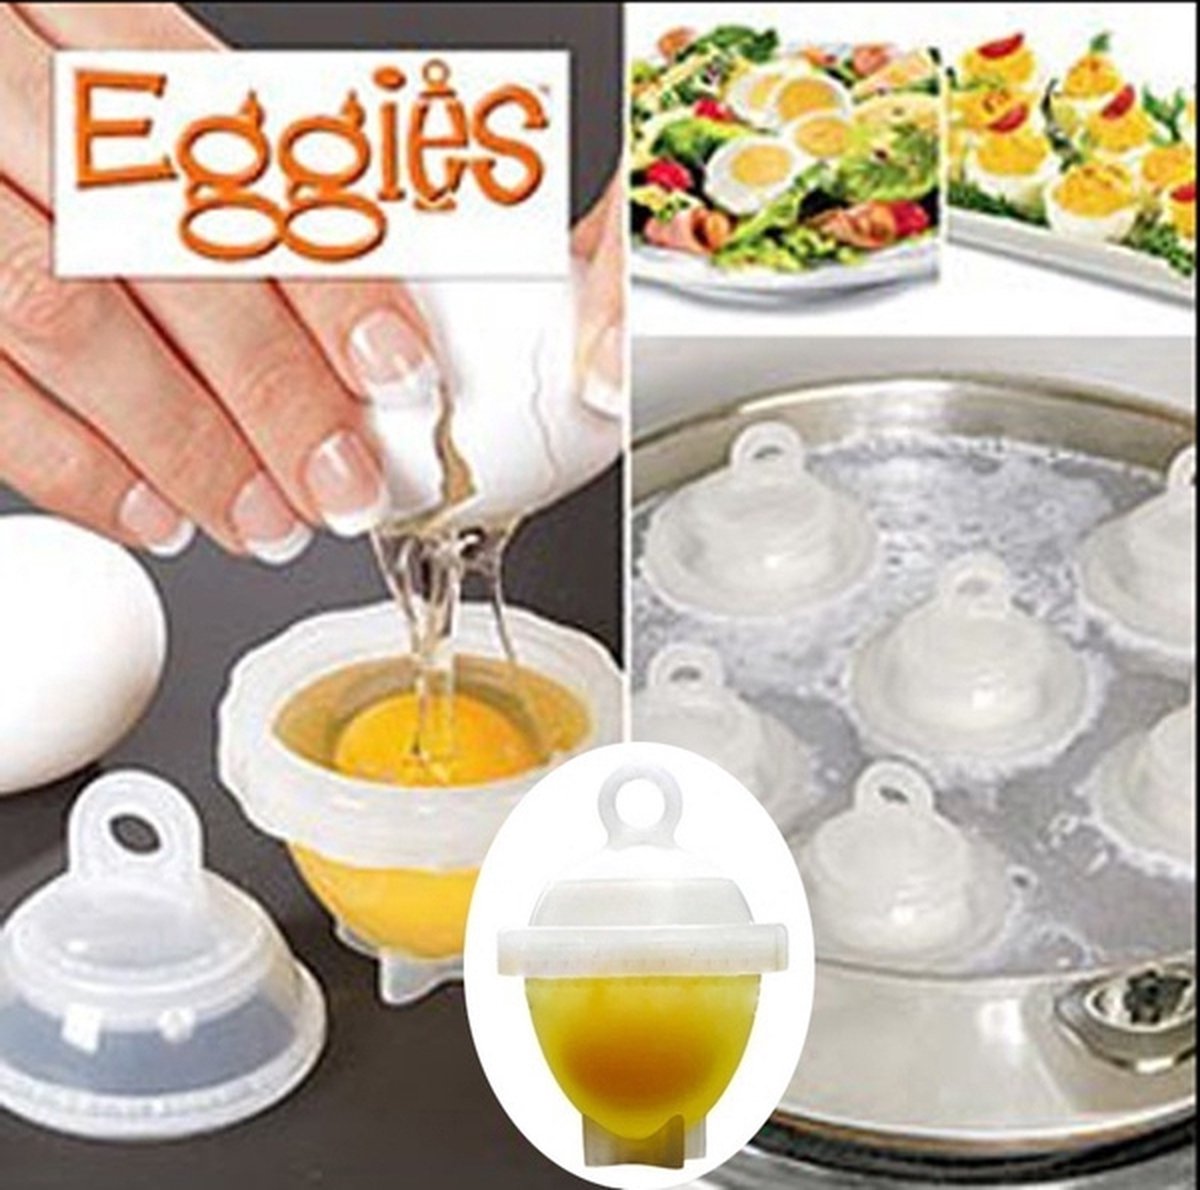 Doodadeals Eierkoker 6 stuks Eieren koken zonder schaal Eggies